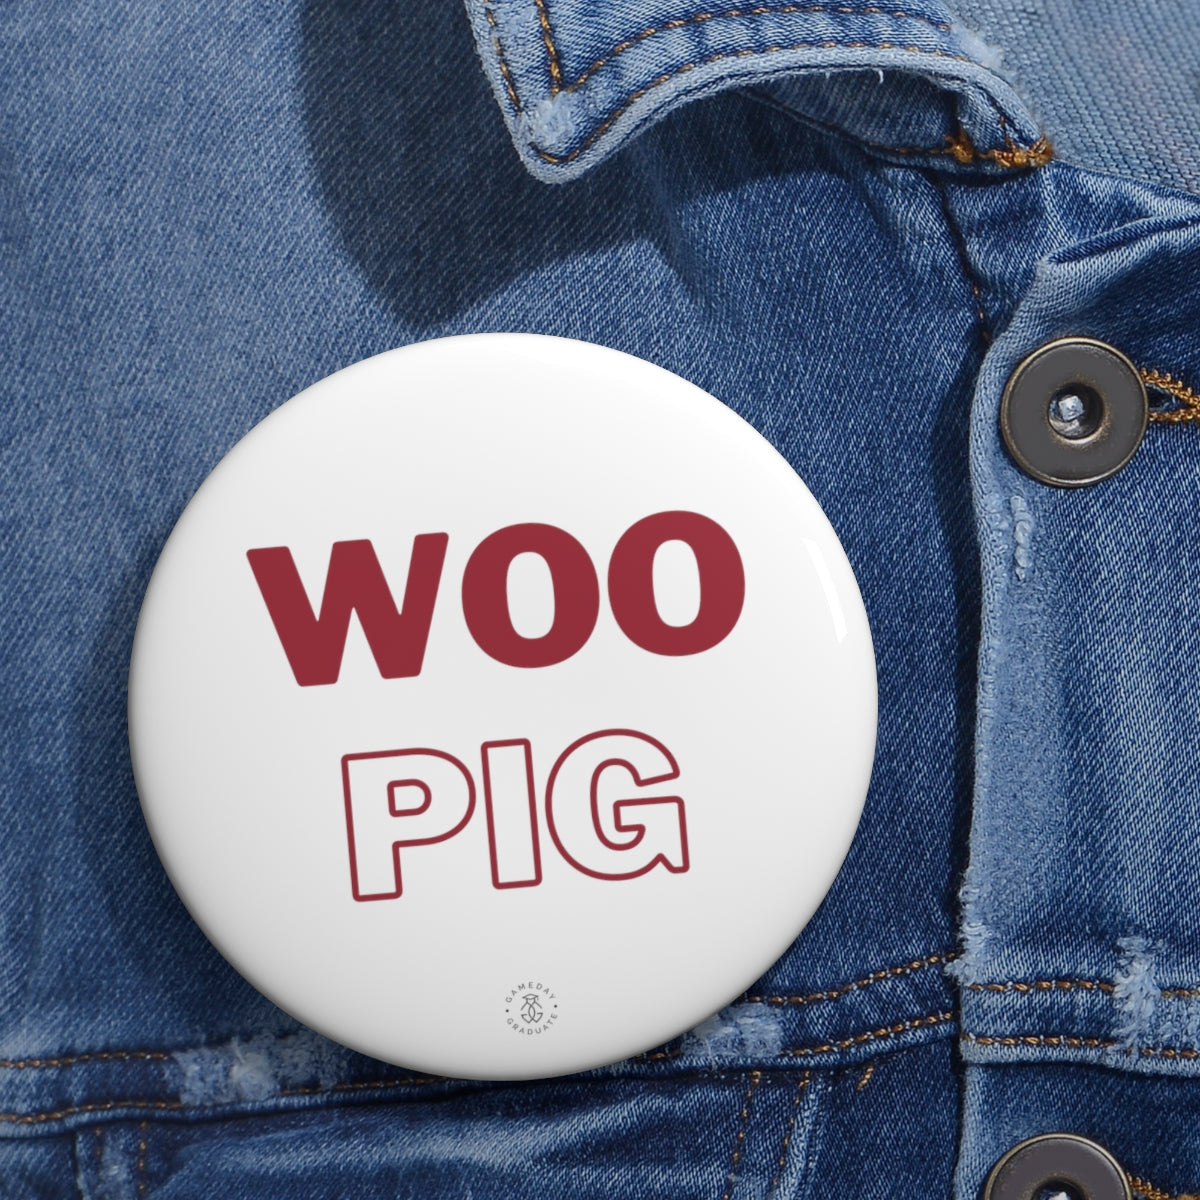 Arkansas Woo Pig Button